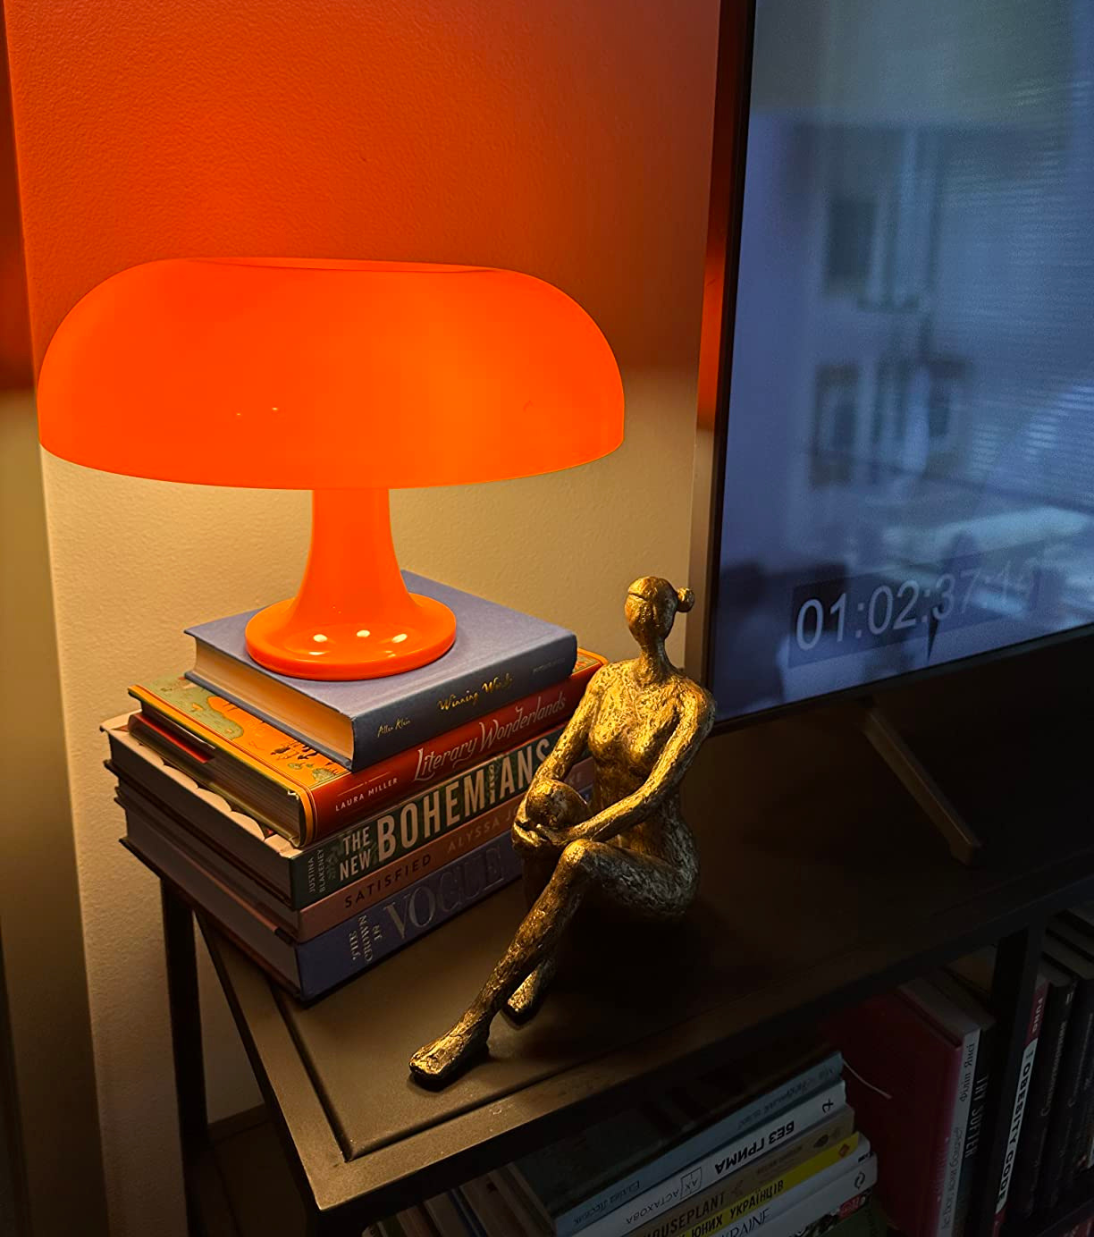 Orange Mushroom Table Lamp